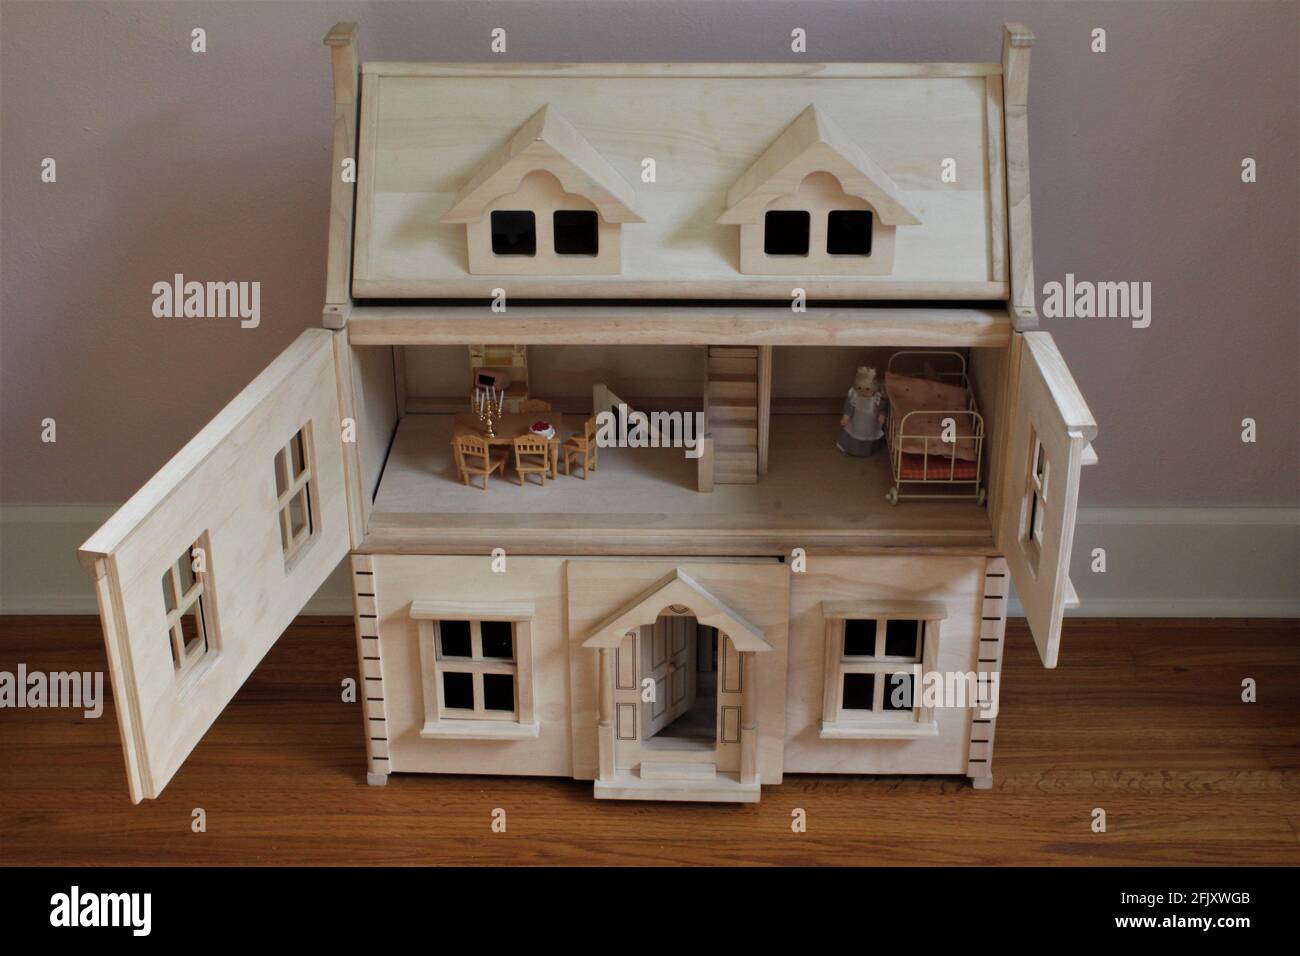 Ein DIY-Puppenhaus aus Holz im Kinderzimmer, um so zu spielen, als ob man es tun würde. Die Türen sind im zweiten Stock geöffnet und das Puppenzimmer ist mit Miniaturmöbeln ausgestattet Stockfoto